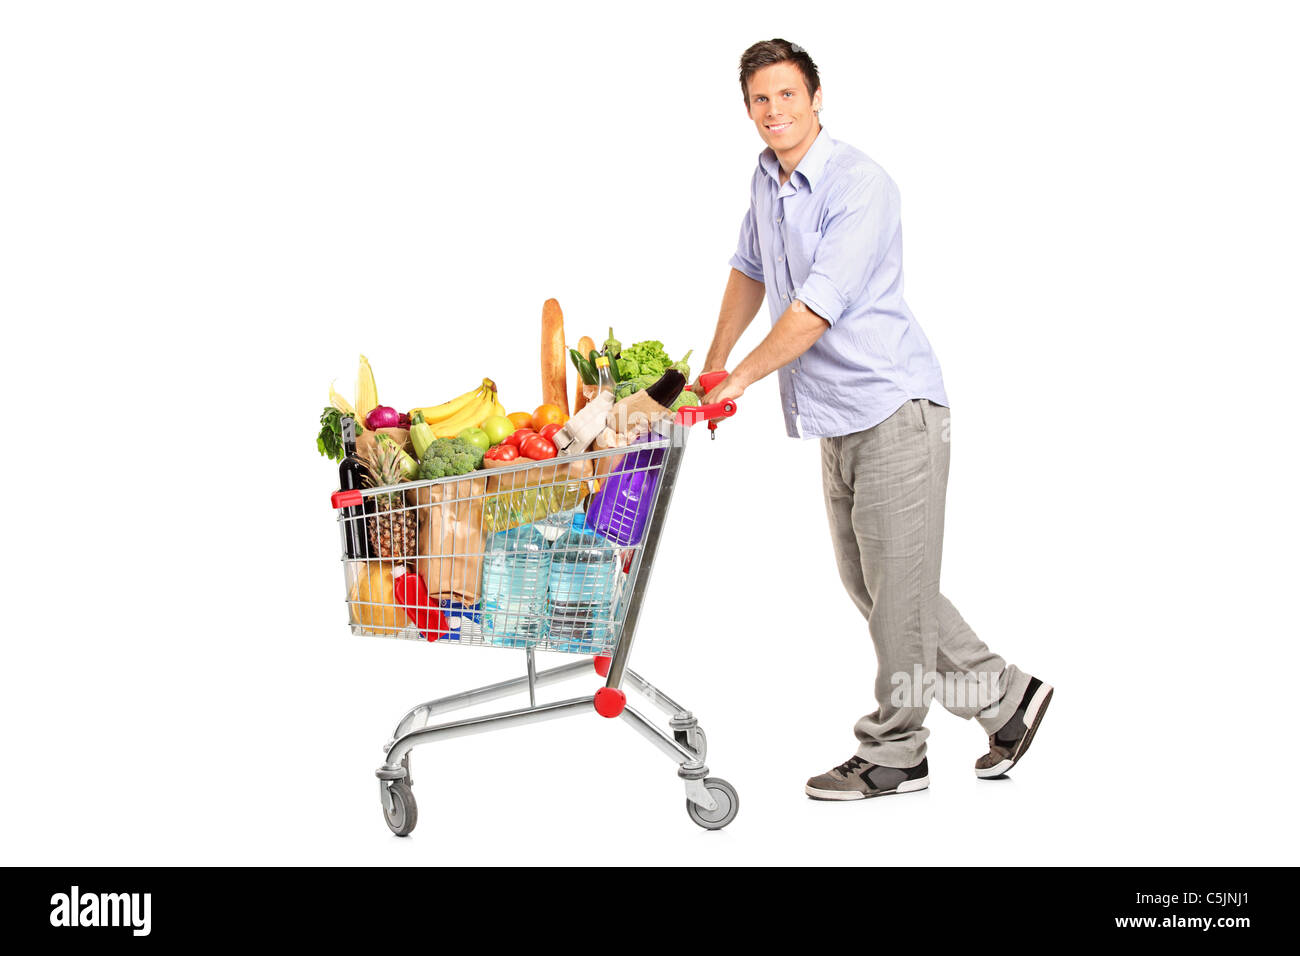 Ein junger Mann schob einen Einkaufswagen voller Lebensmittel  Stockfotografie - Alamy